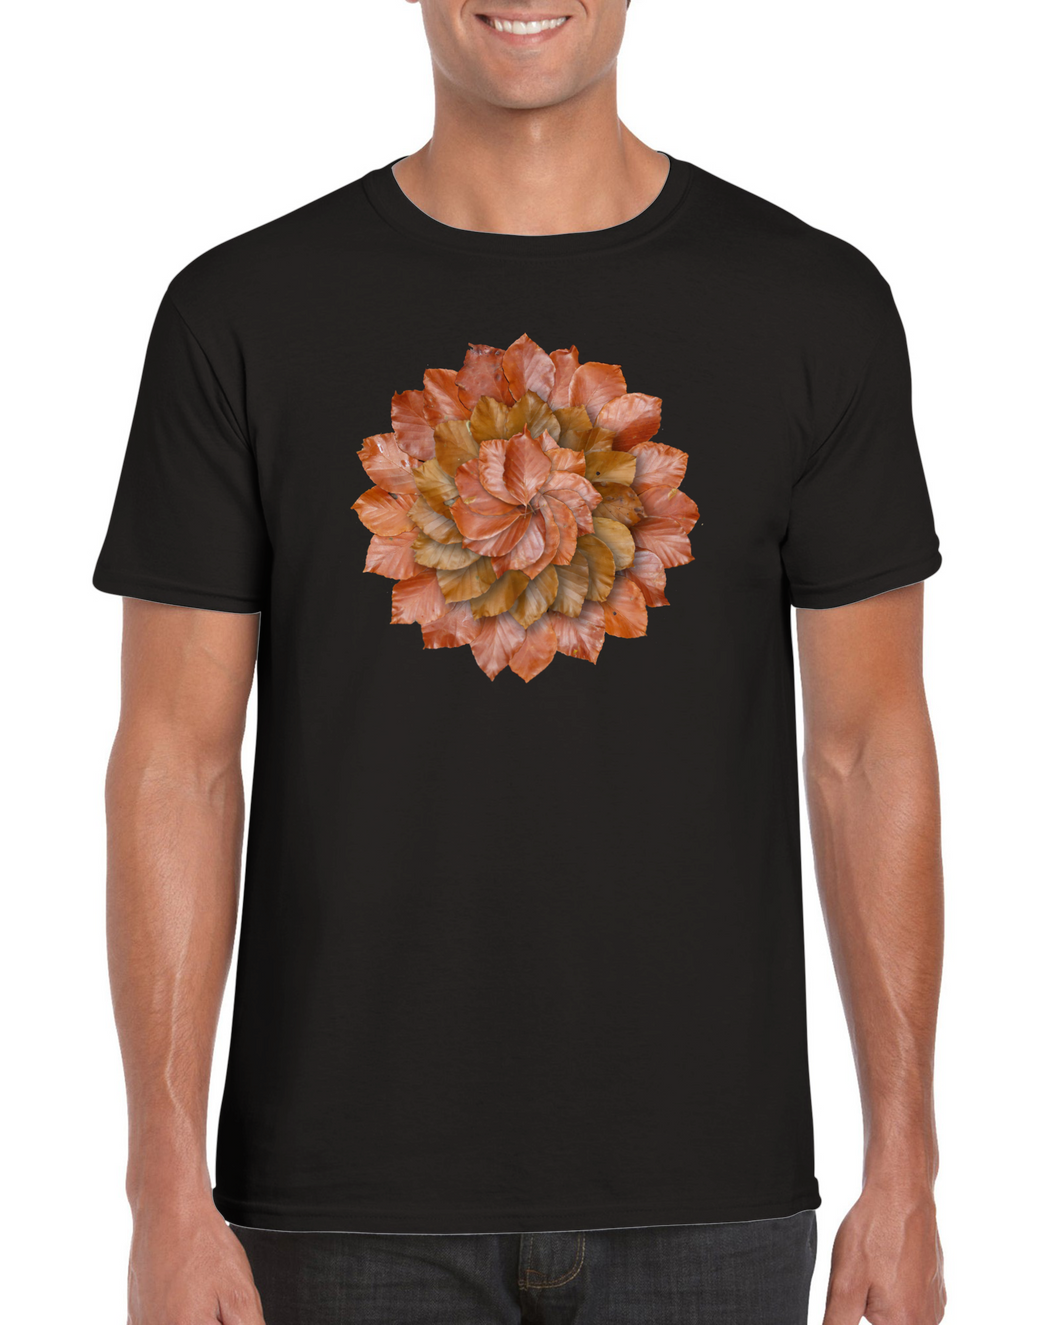 Beech Autumn Leaves - Unisex  T-shirt